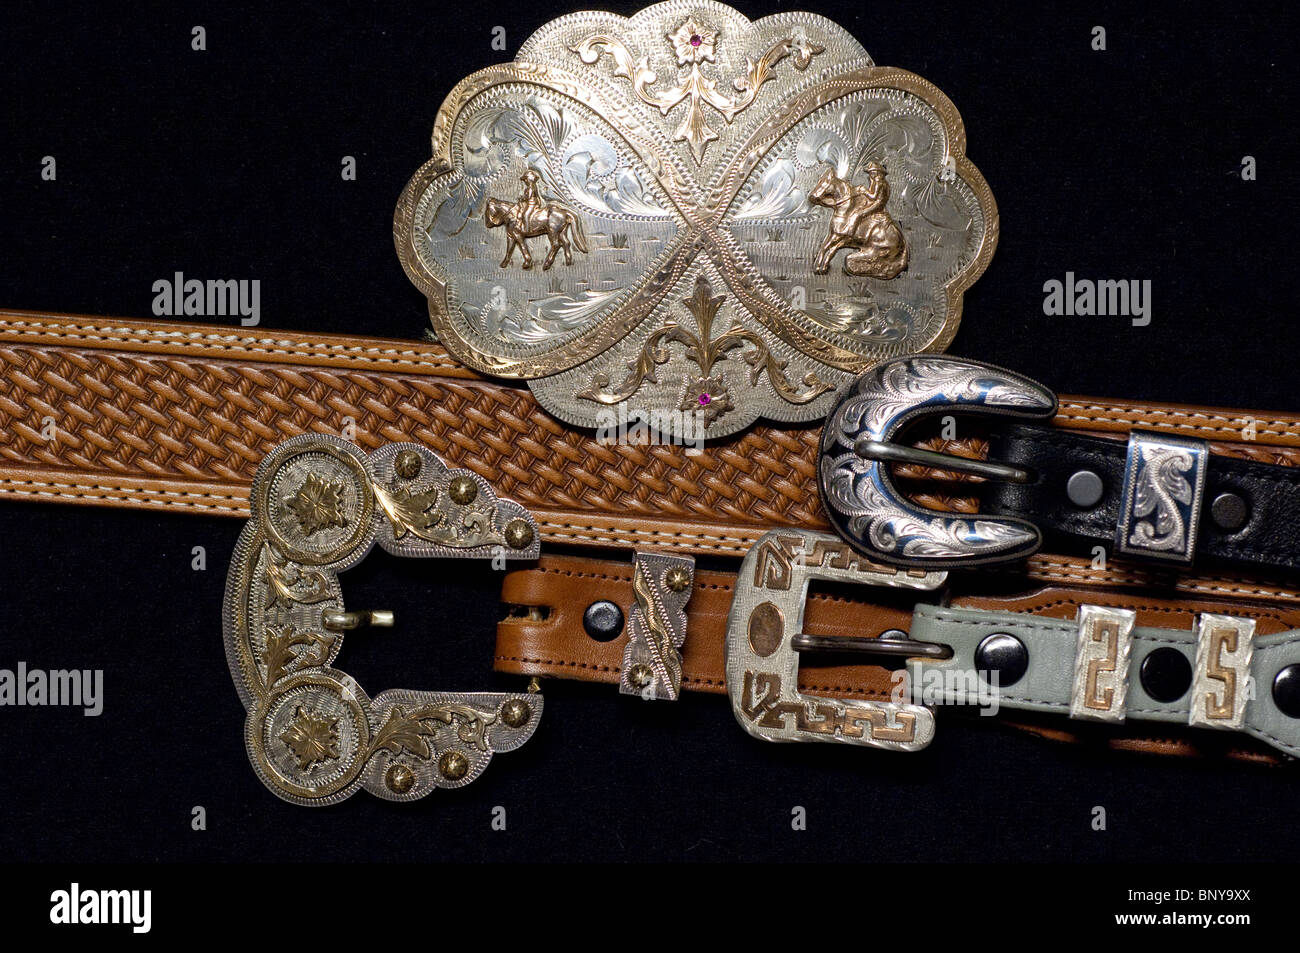 Sterling Silver & Gold, grabado a mano Western de cinturones de cuero. Liberación de la propiedad Fotografía de stock Alamy